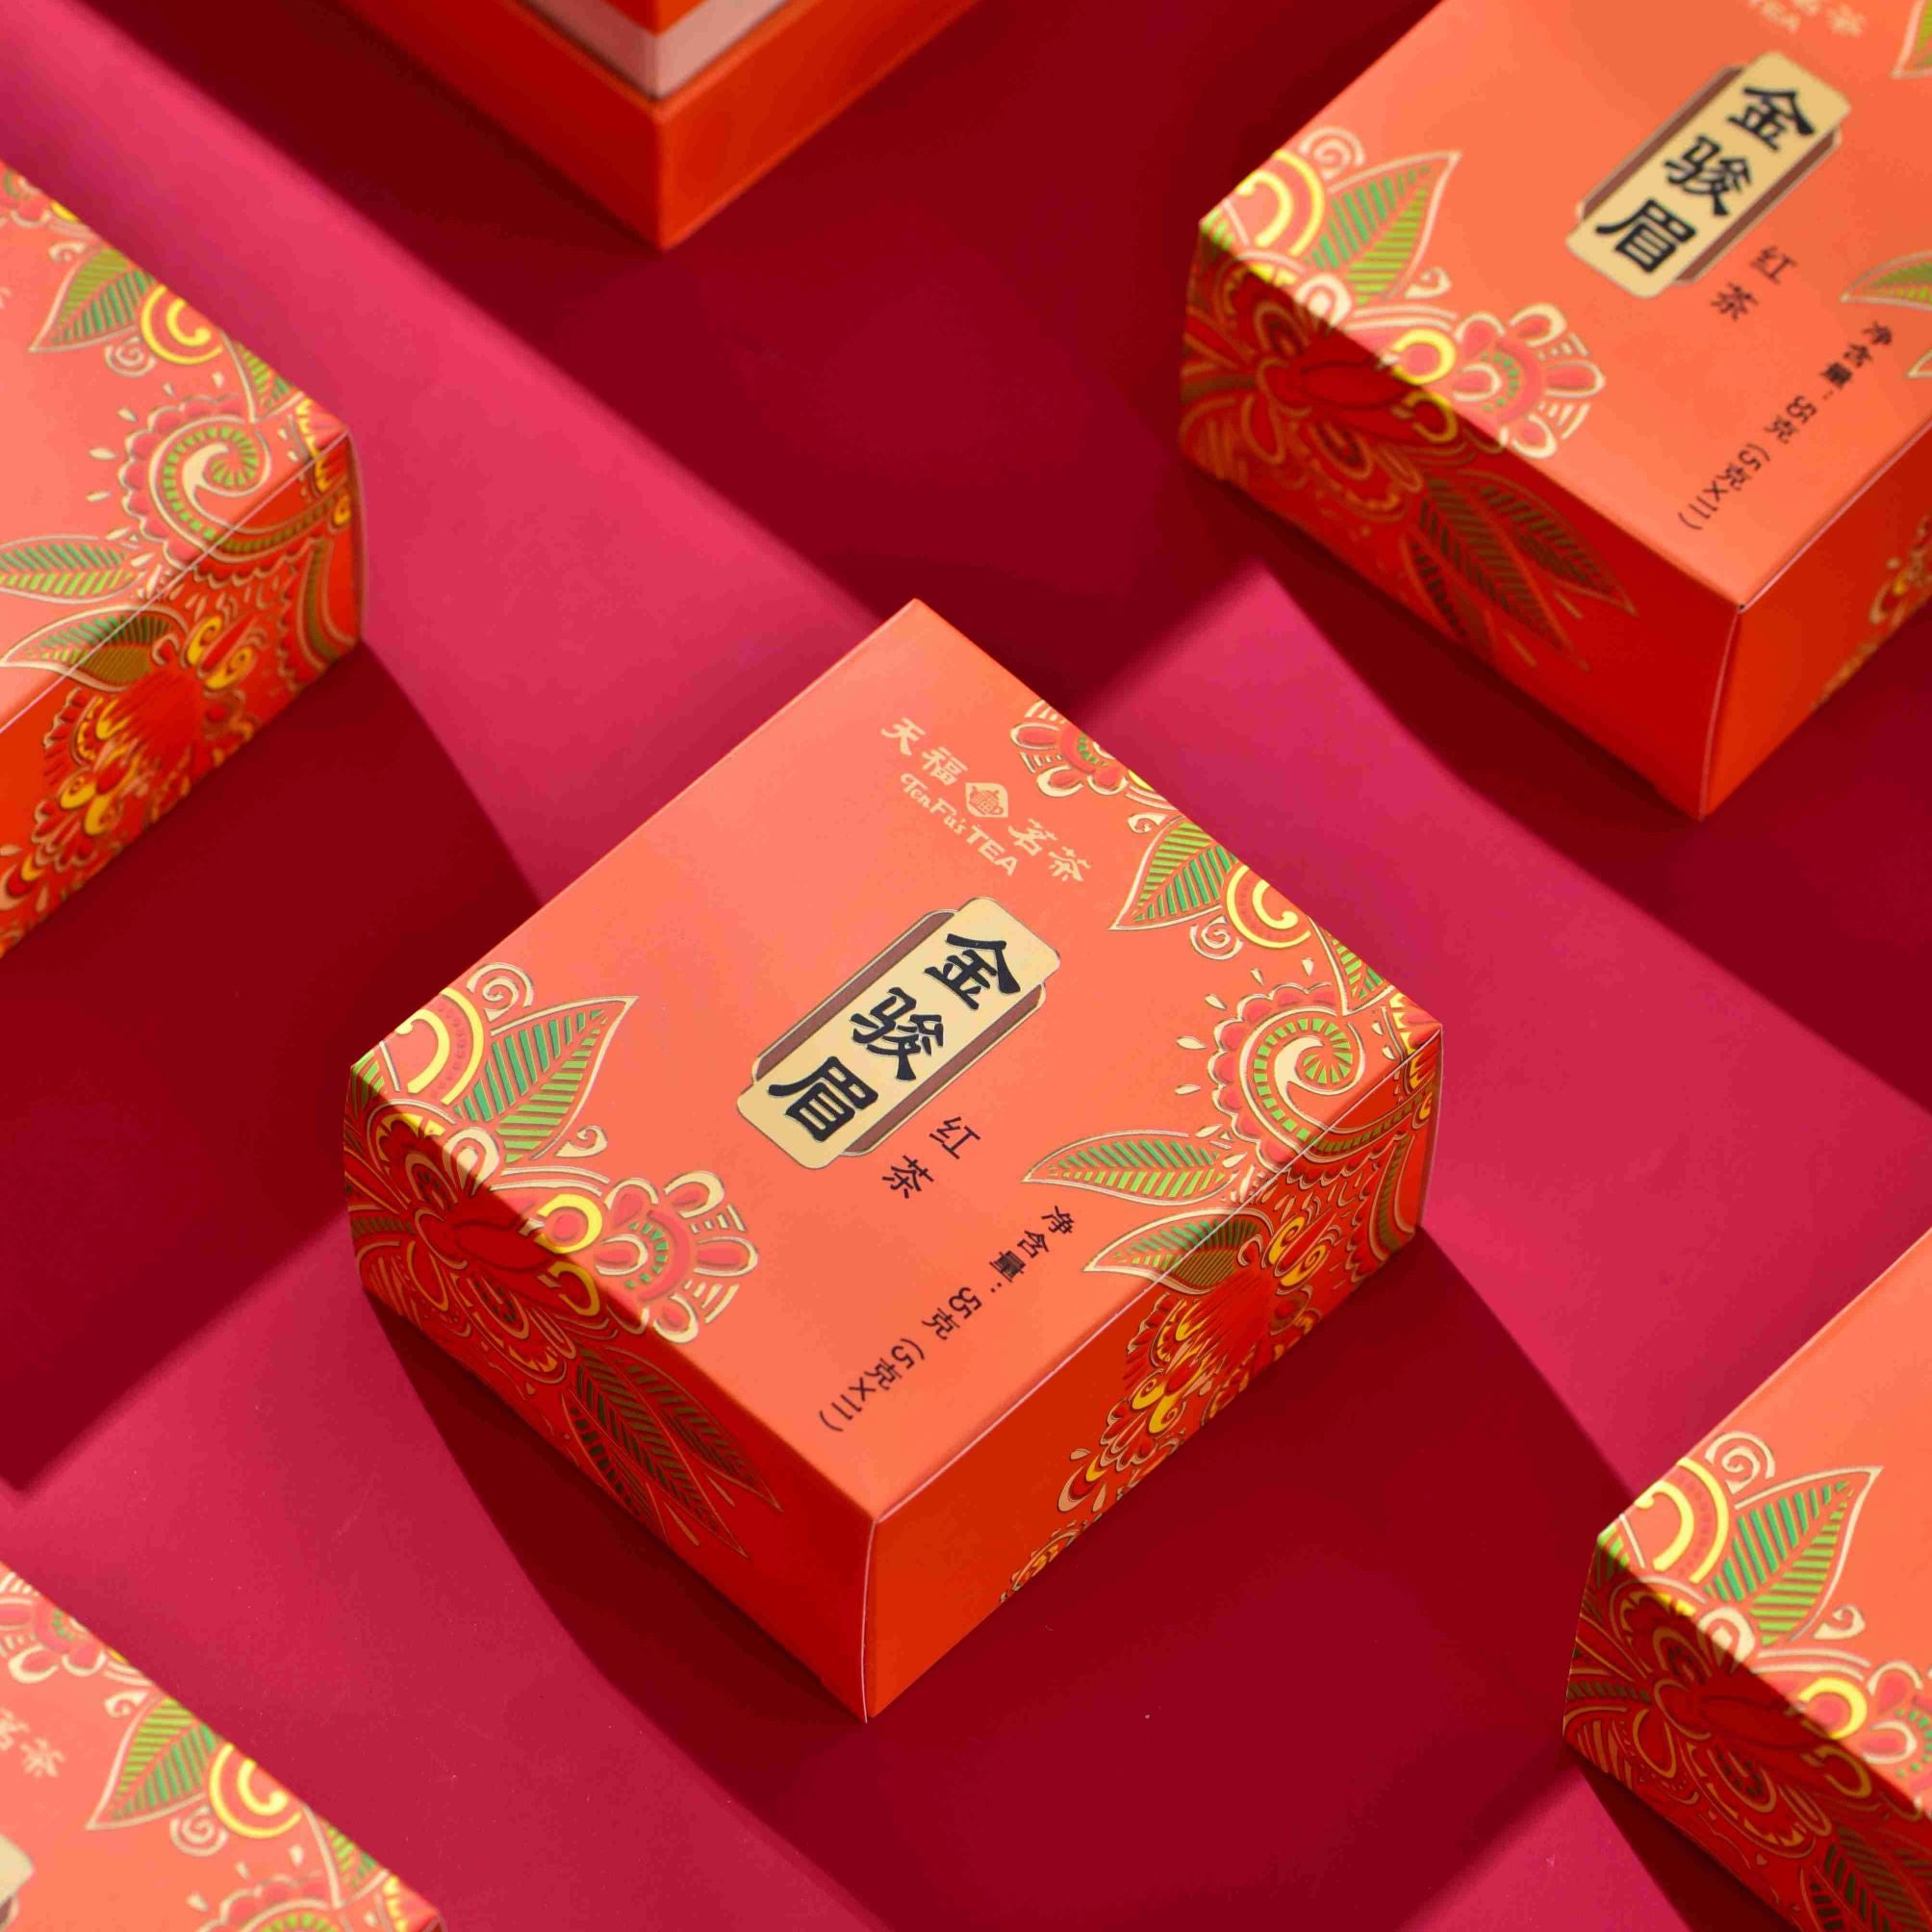 中国红茶-金骏眉红茶礼品集-天福茶– TenFu's TEA